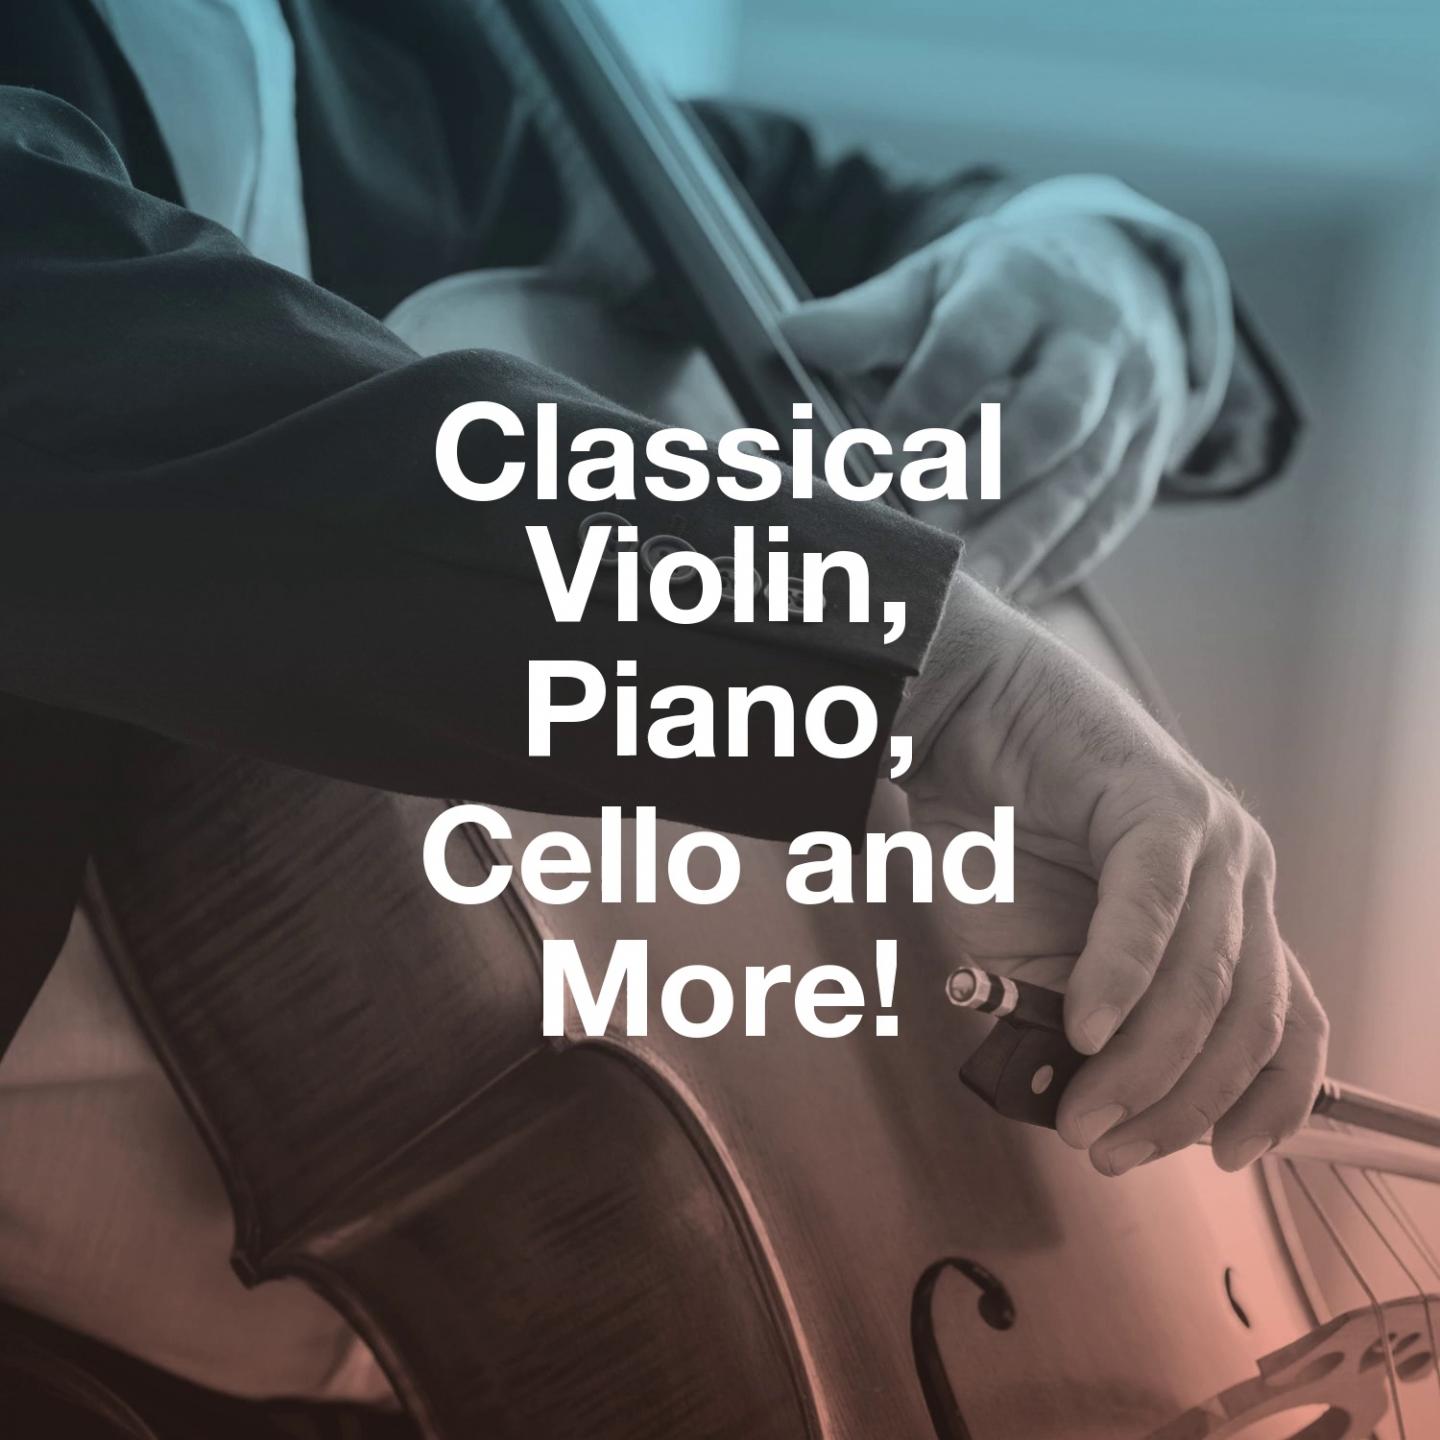 Classical Violin, Piano, Cello and More!